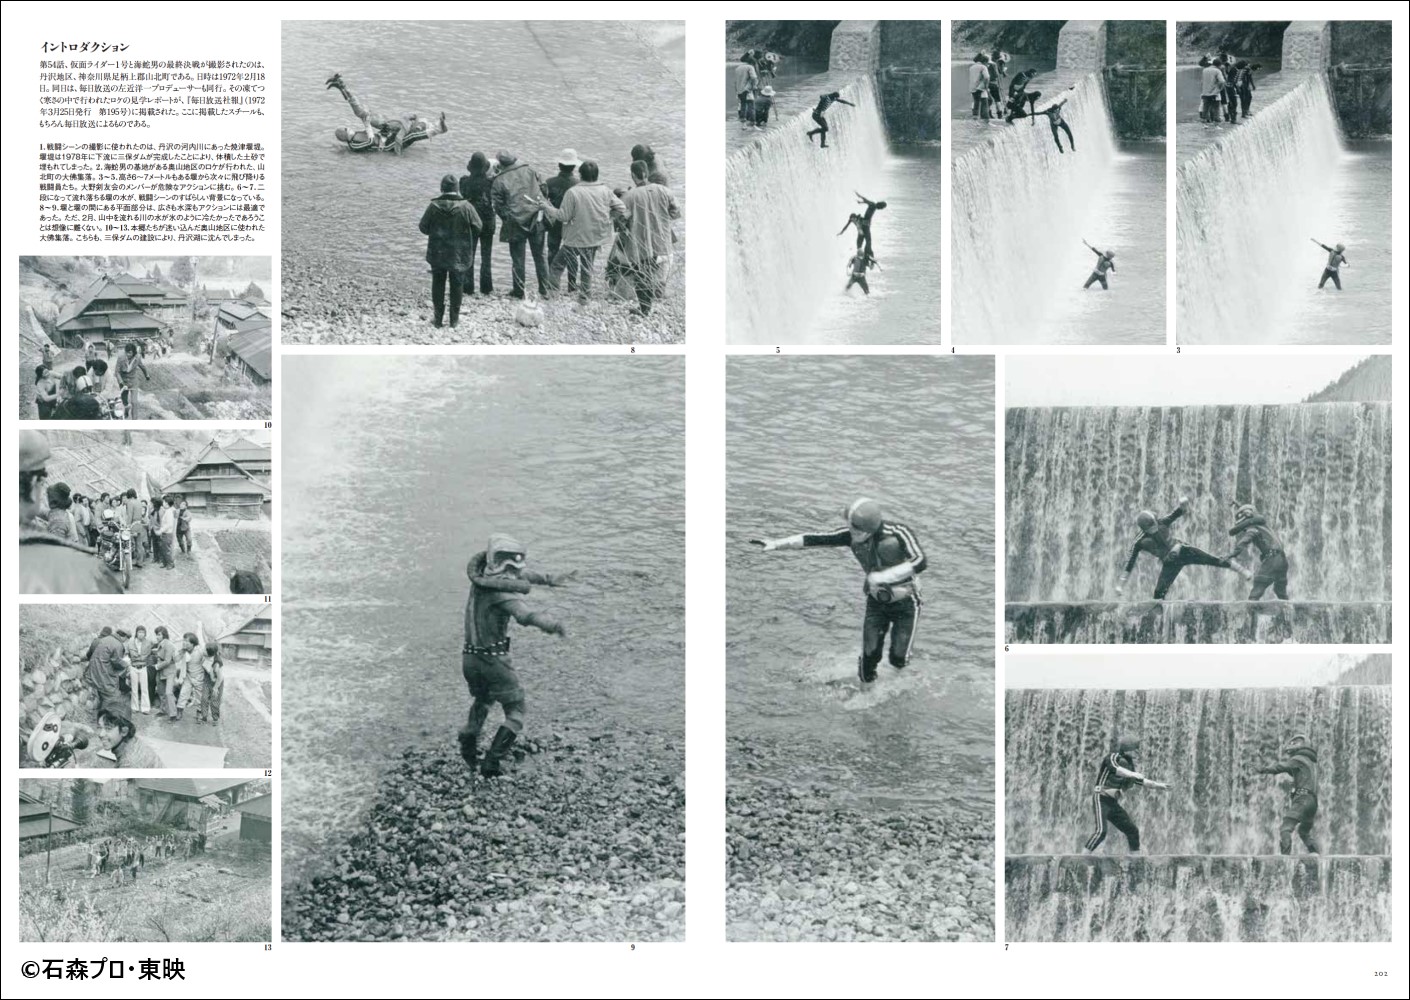 仮面ライダー資料写真集1971-1973 『仮面ライダー』生誕50周年記念